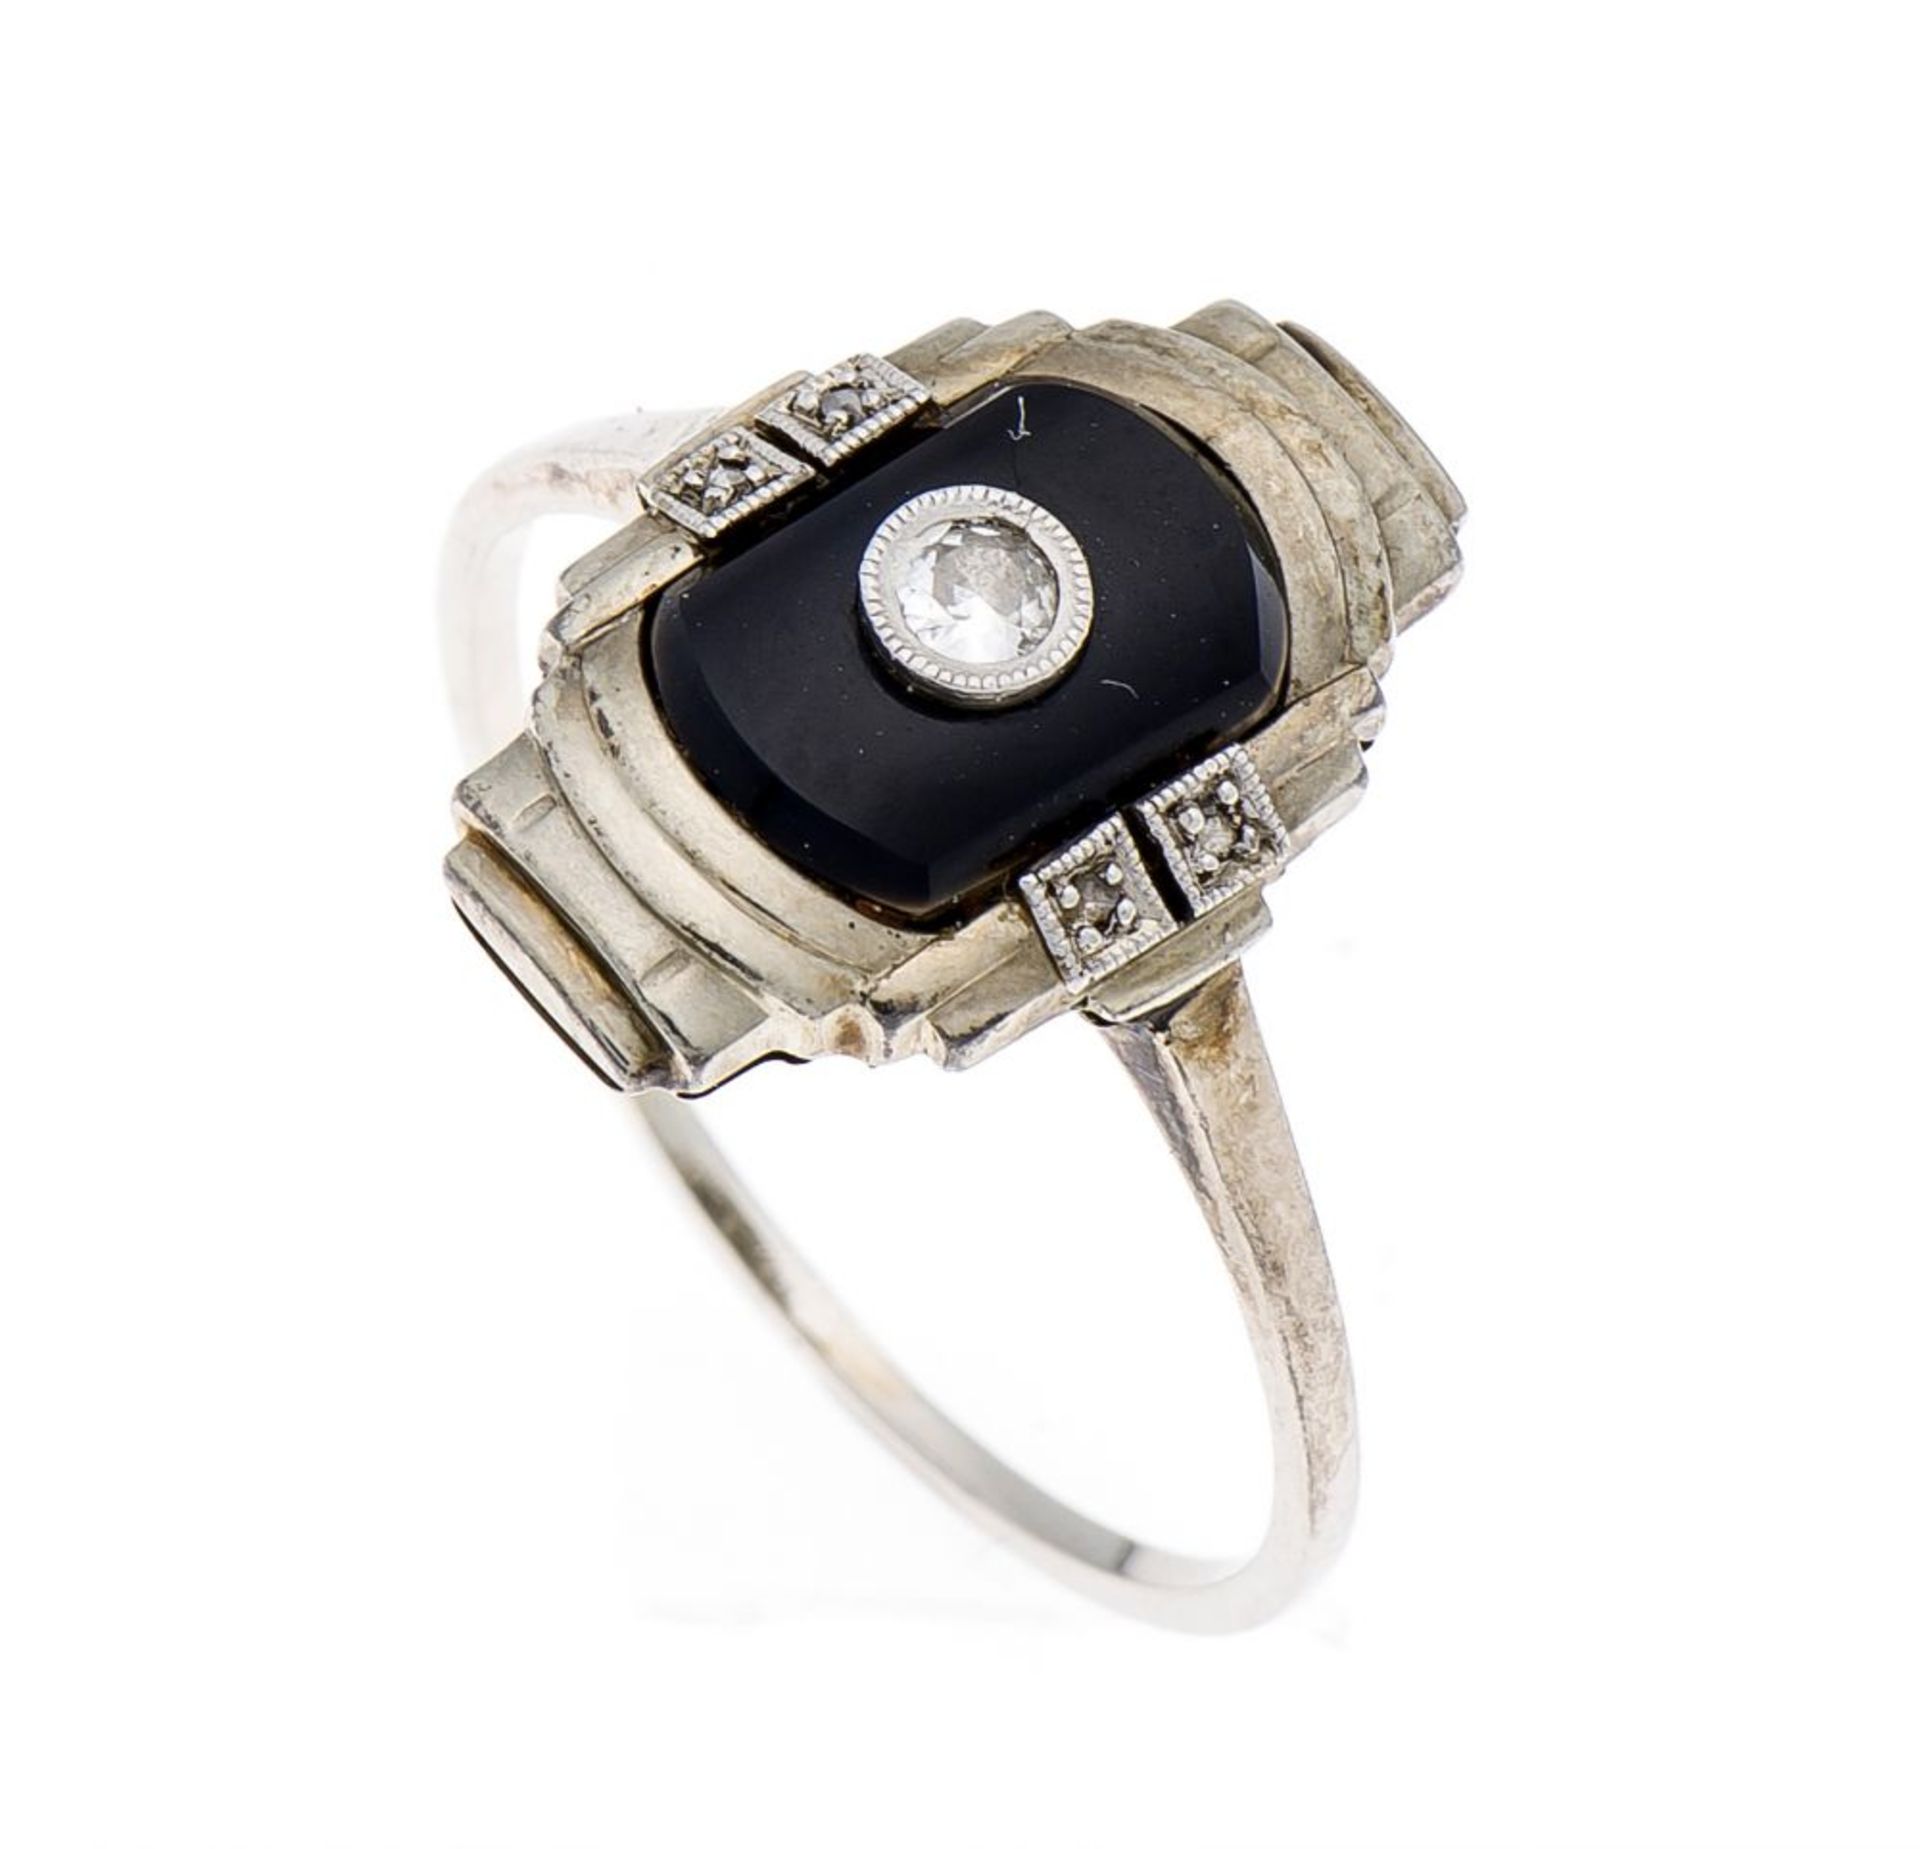 Onyx-Altschliff-Diamant-Ring WG 585/000 mit einem Onyxelement 9 mm, einem Altschliff-Diamanten 0,